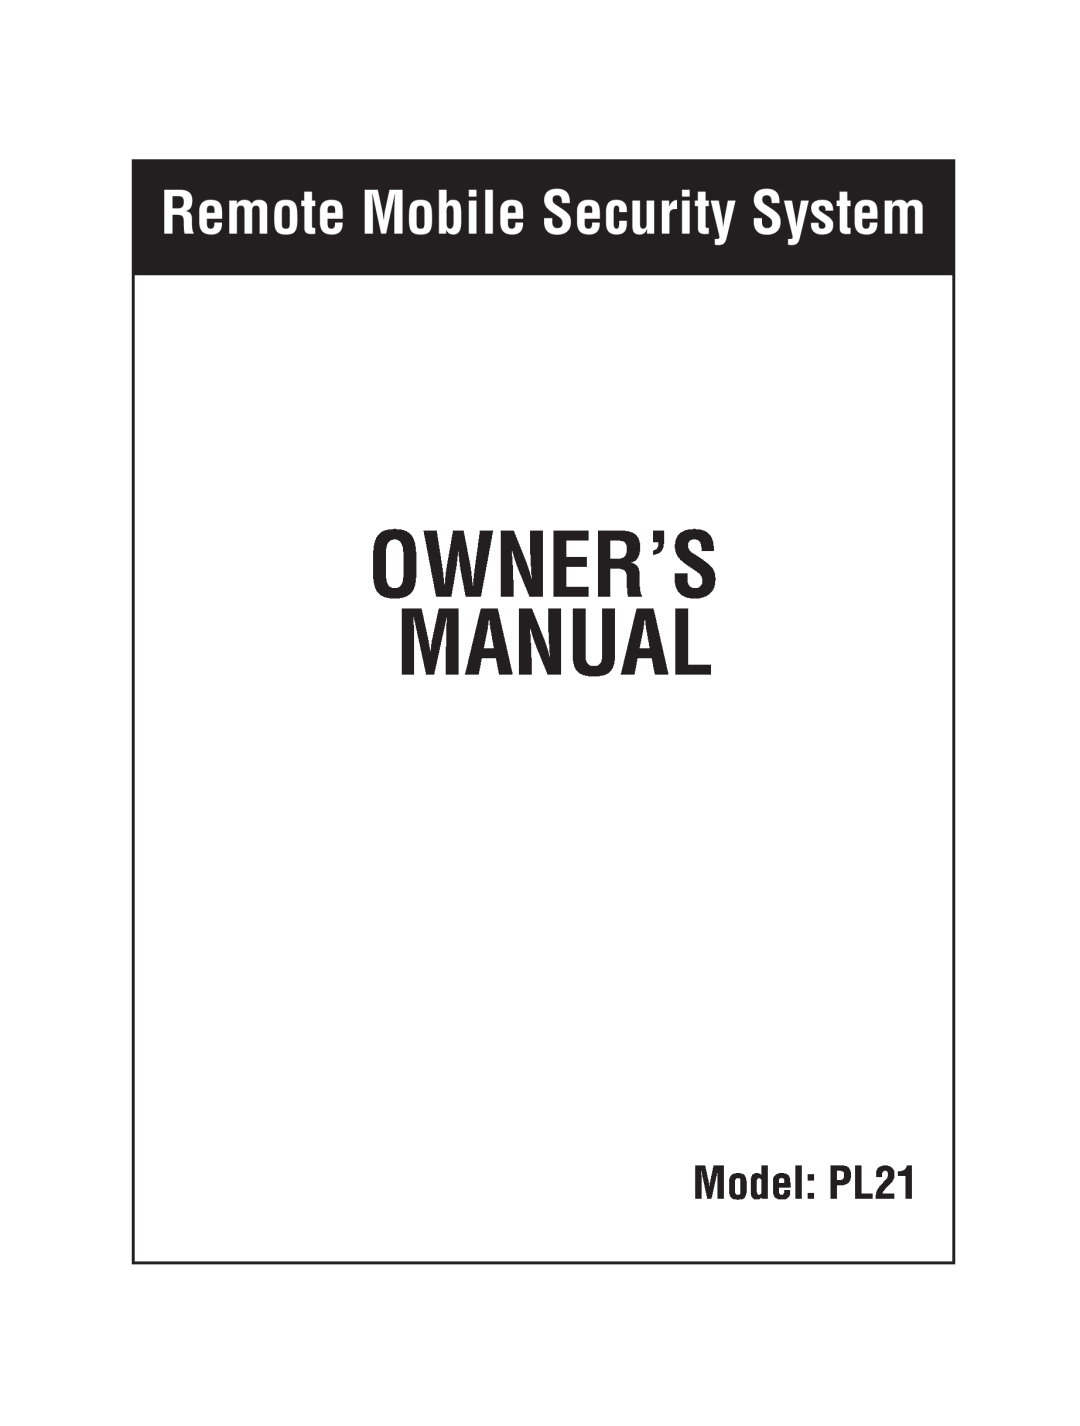 Magnadyne owner manual Remote Mobile Security System, Model PL21 